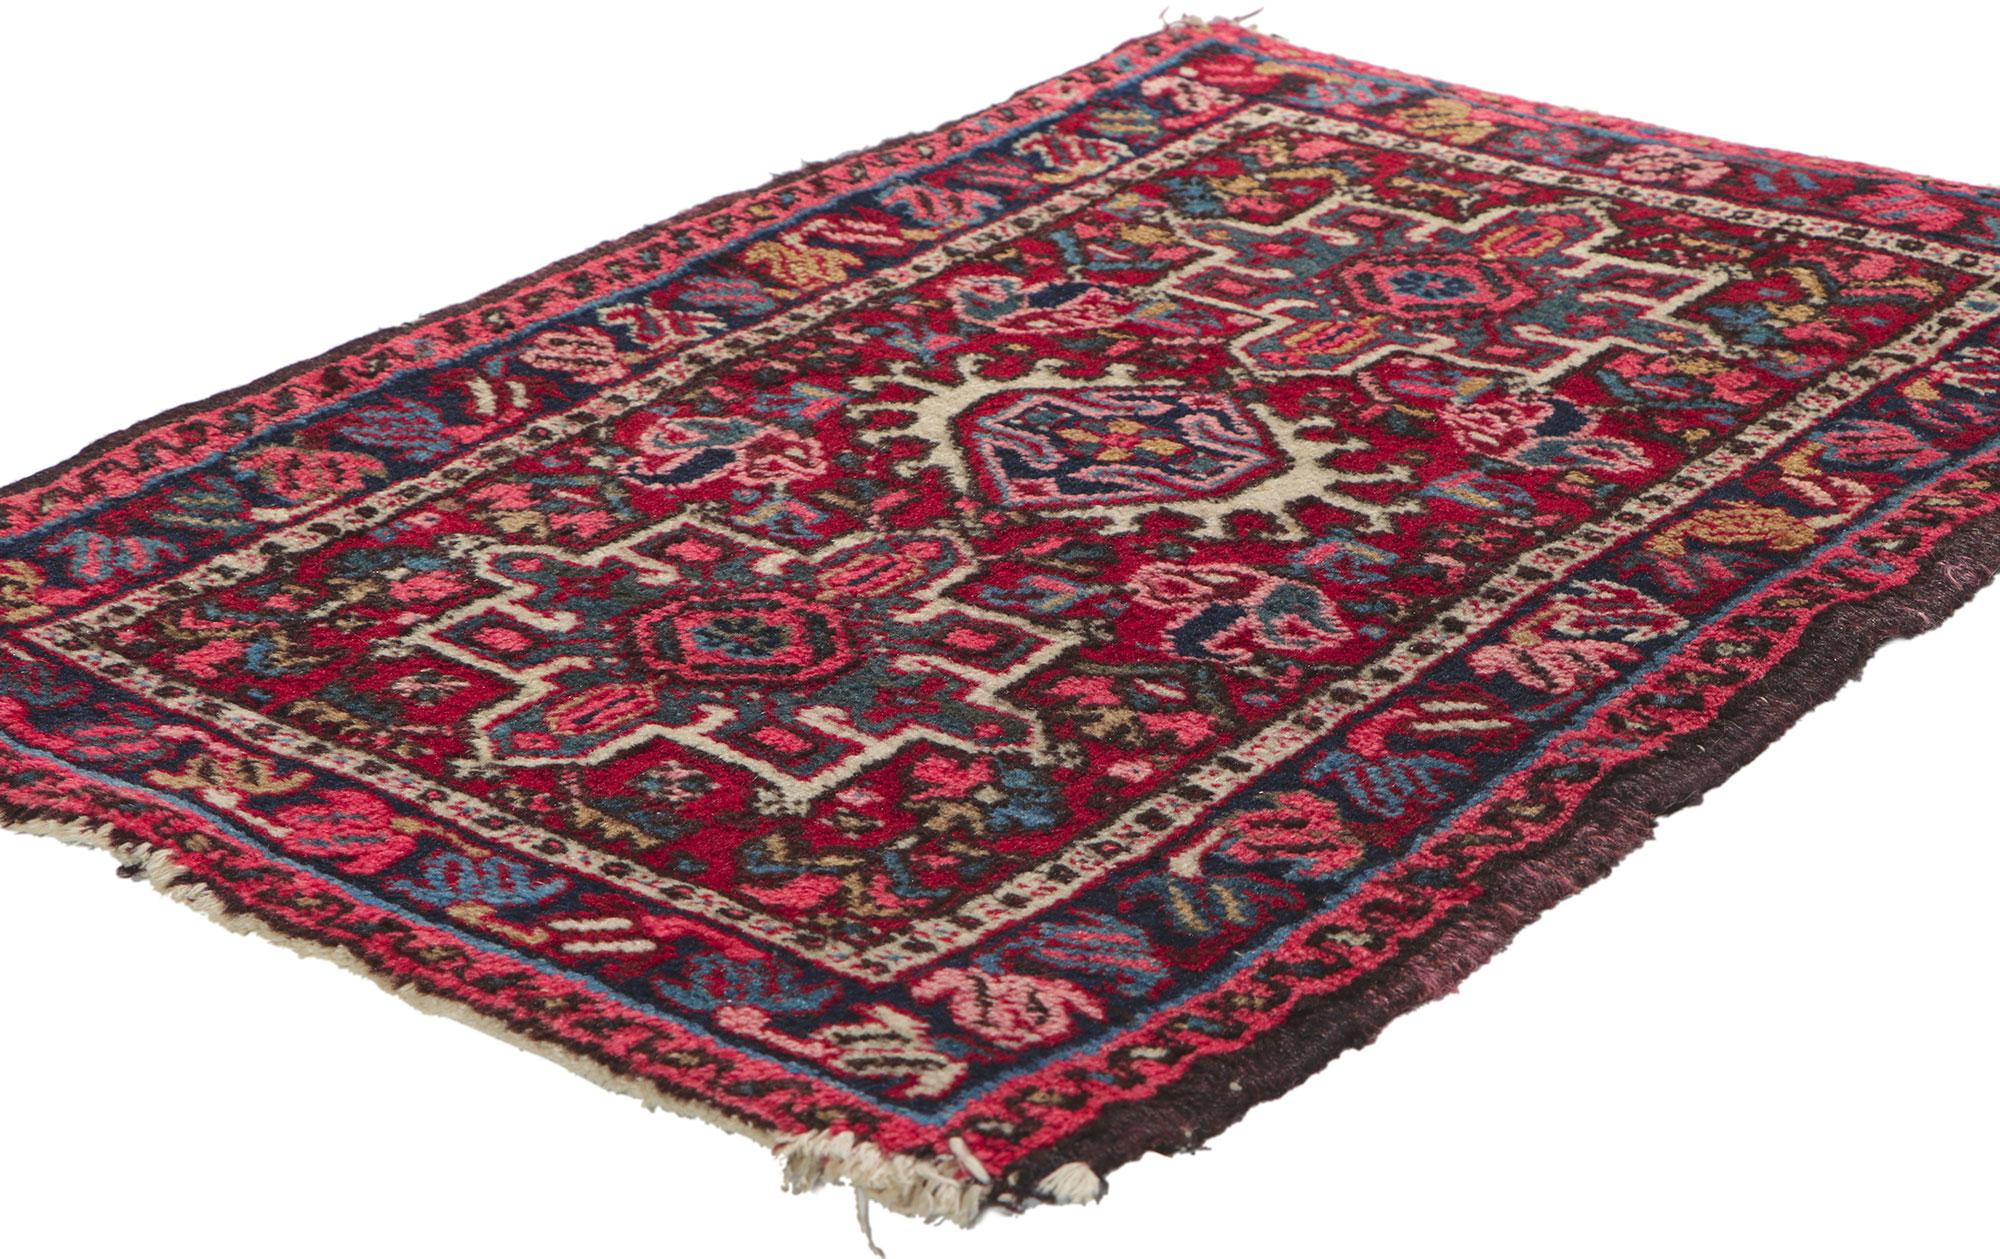 78347 Tapis persan Vintage Heriz, 01'11 x 02'10. Présentant un design intemporel avec des détails et une texture incroyables, ce tapis persan Heriz vintage en laine nouée à la main est prêt à impressionner. Le motif géométrique accrocheur et la